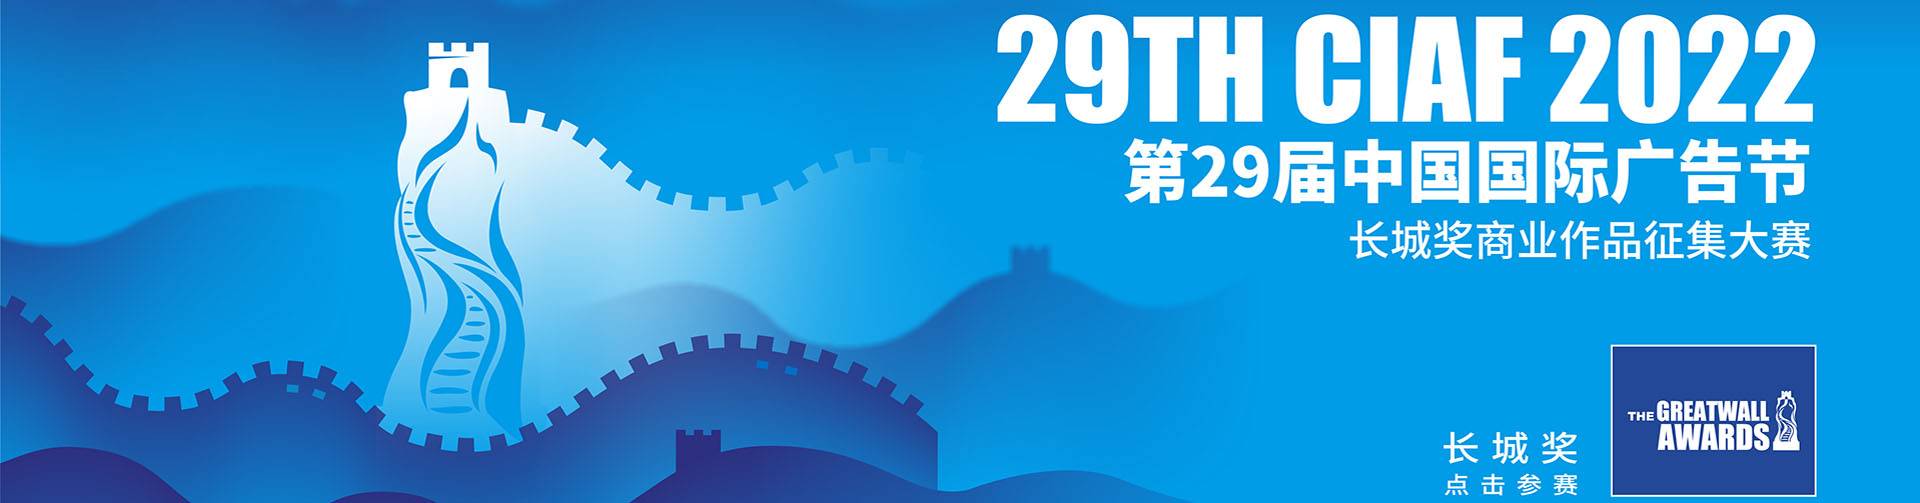 第29届中国国际广告节--长城奖商业作品征集大赛开赛(图1)